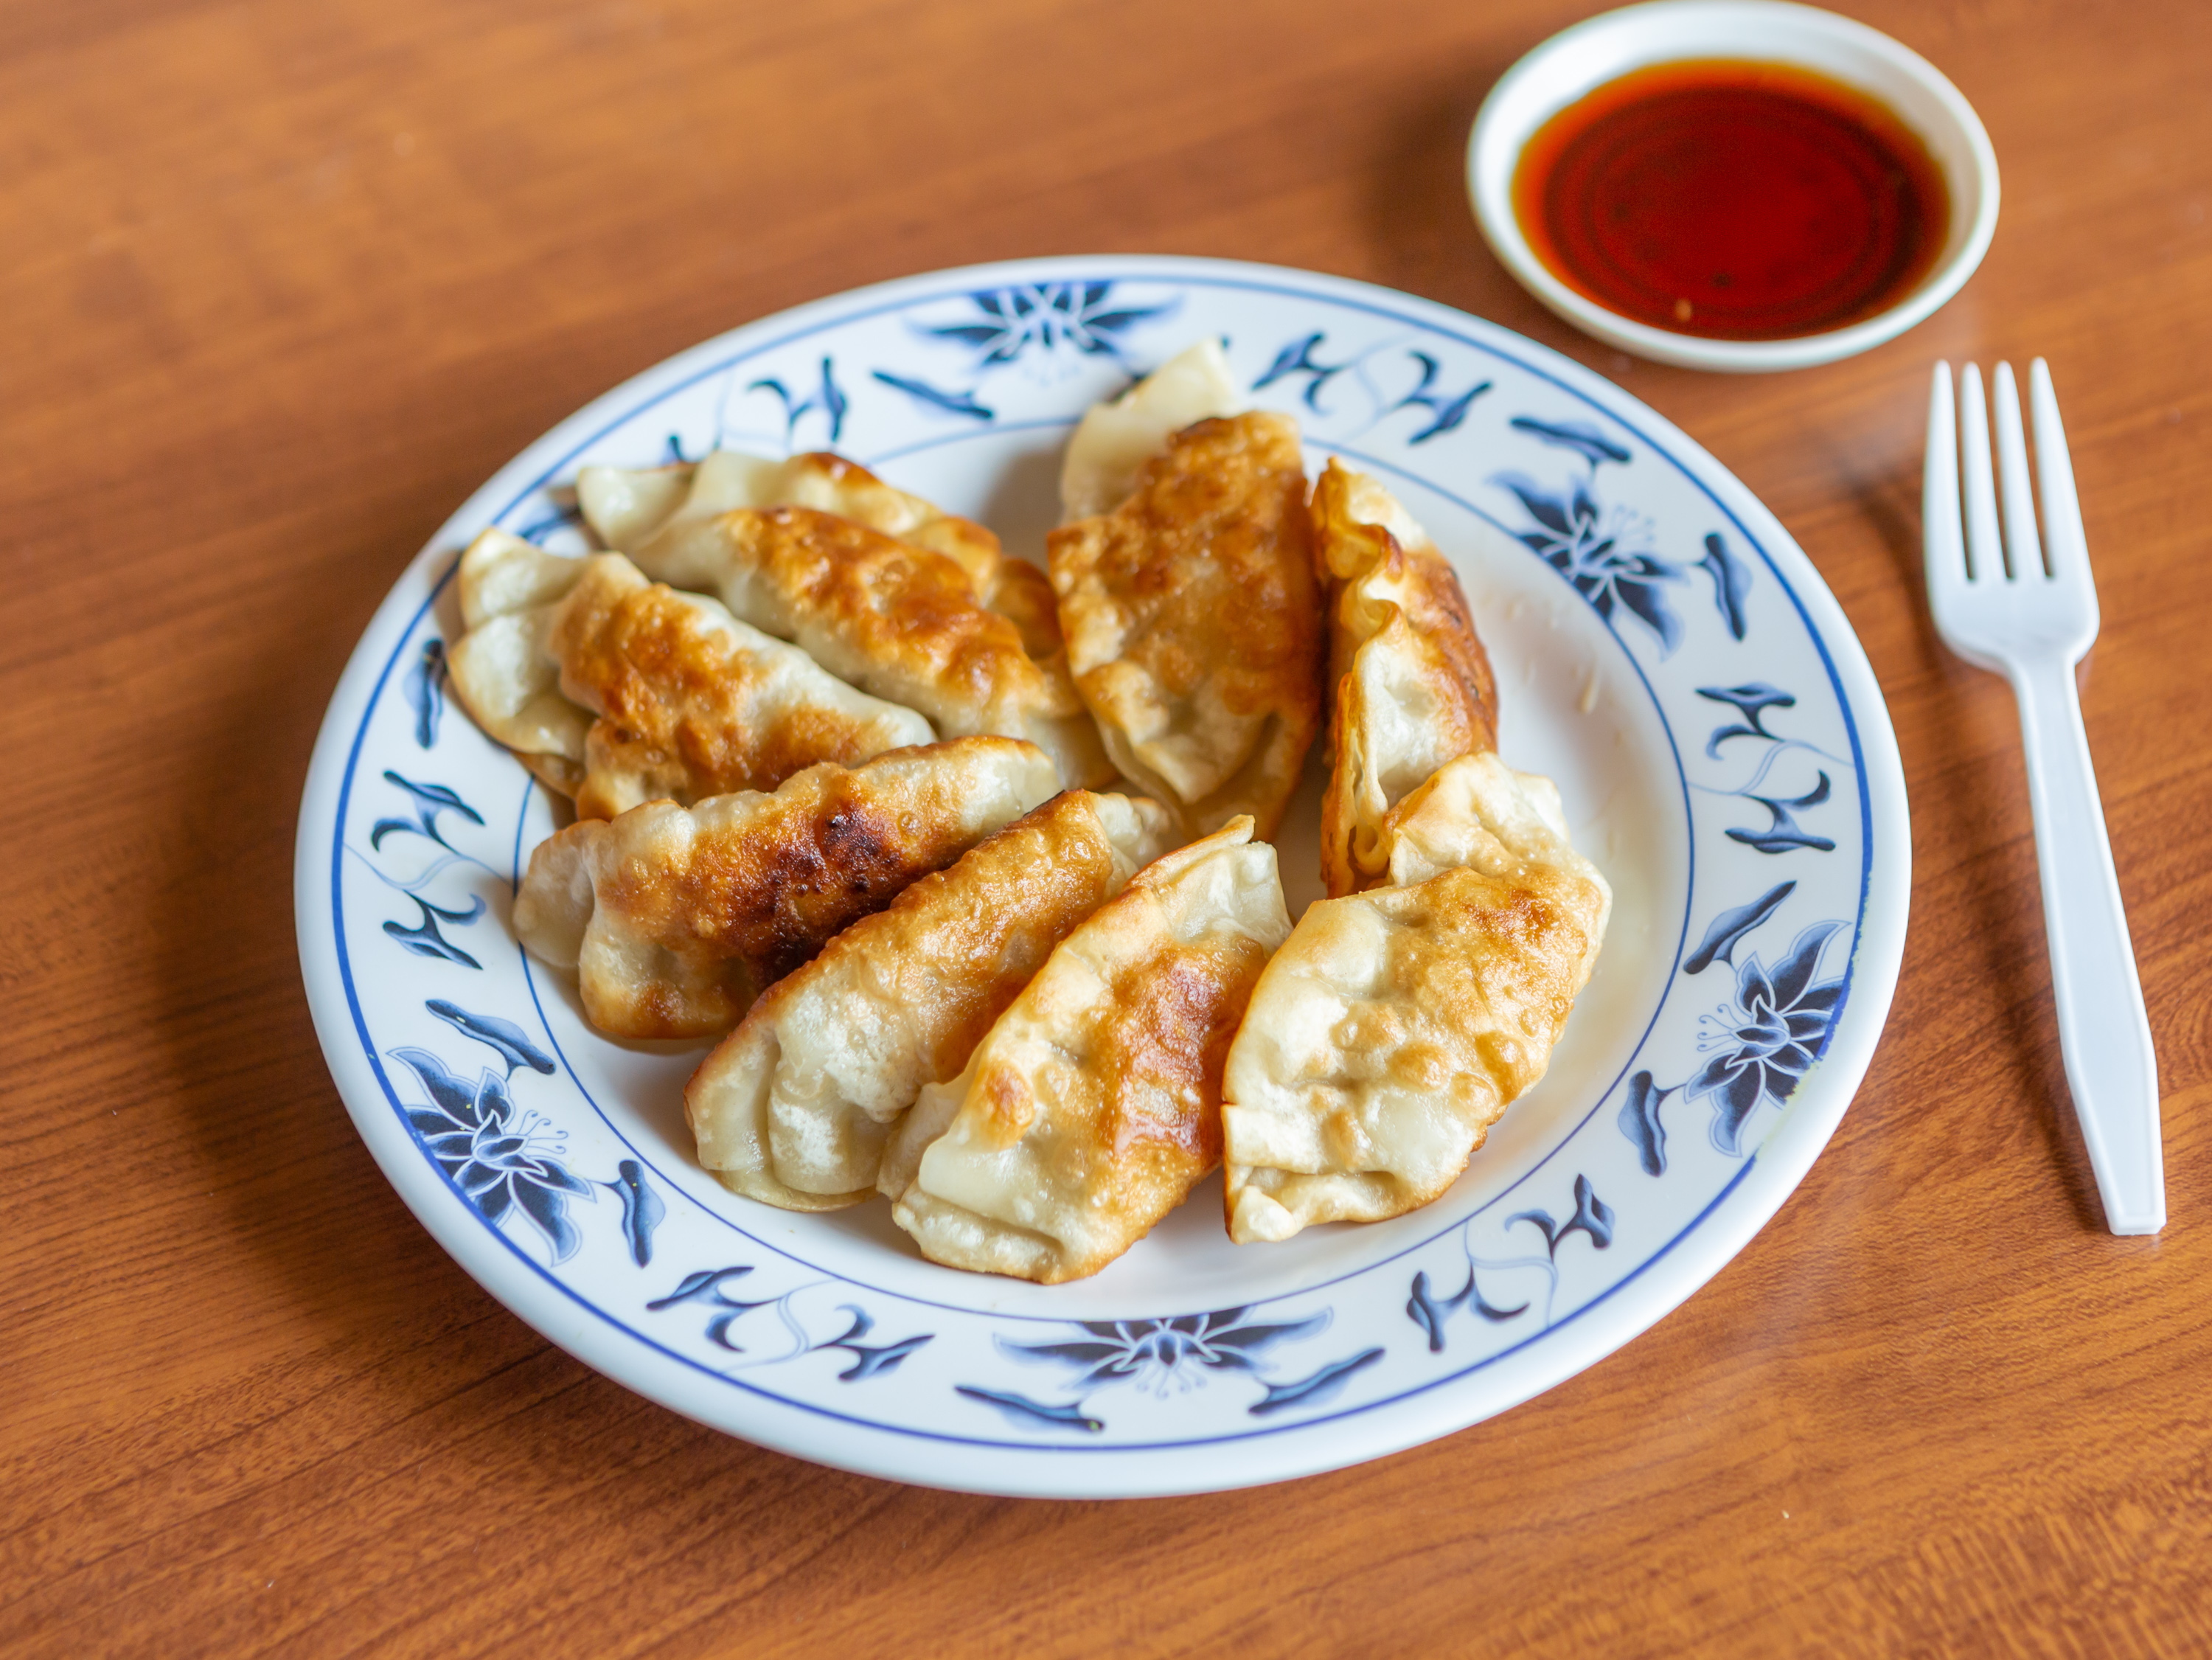 Order 7. Fried Dumplings food online from Guilin store, Saline on bringmethat.com